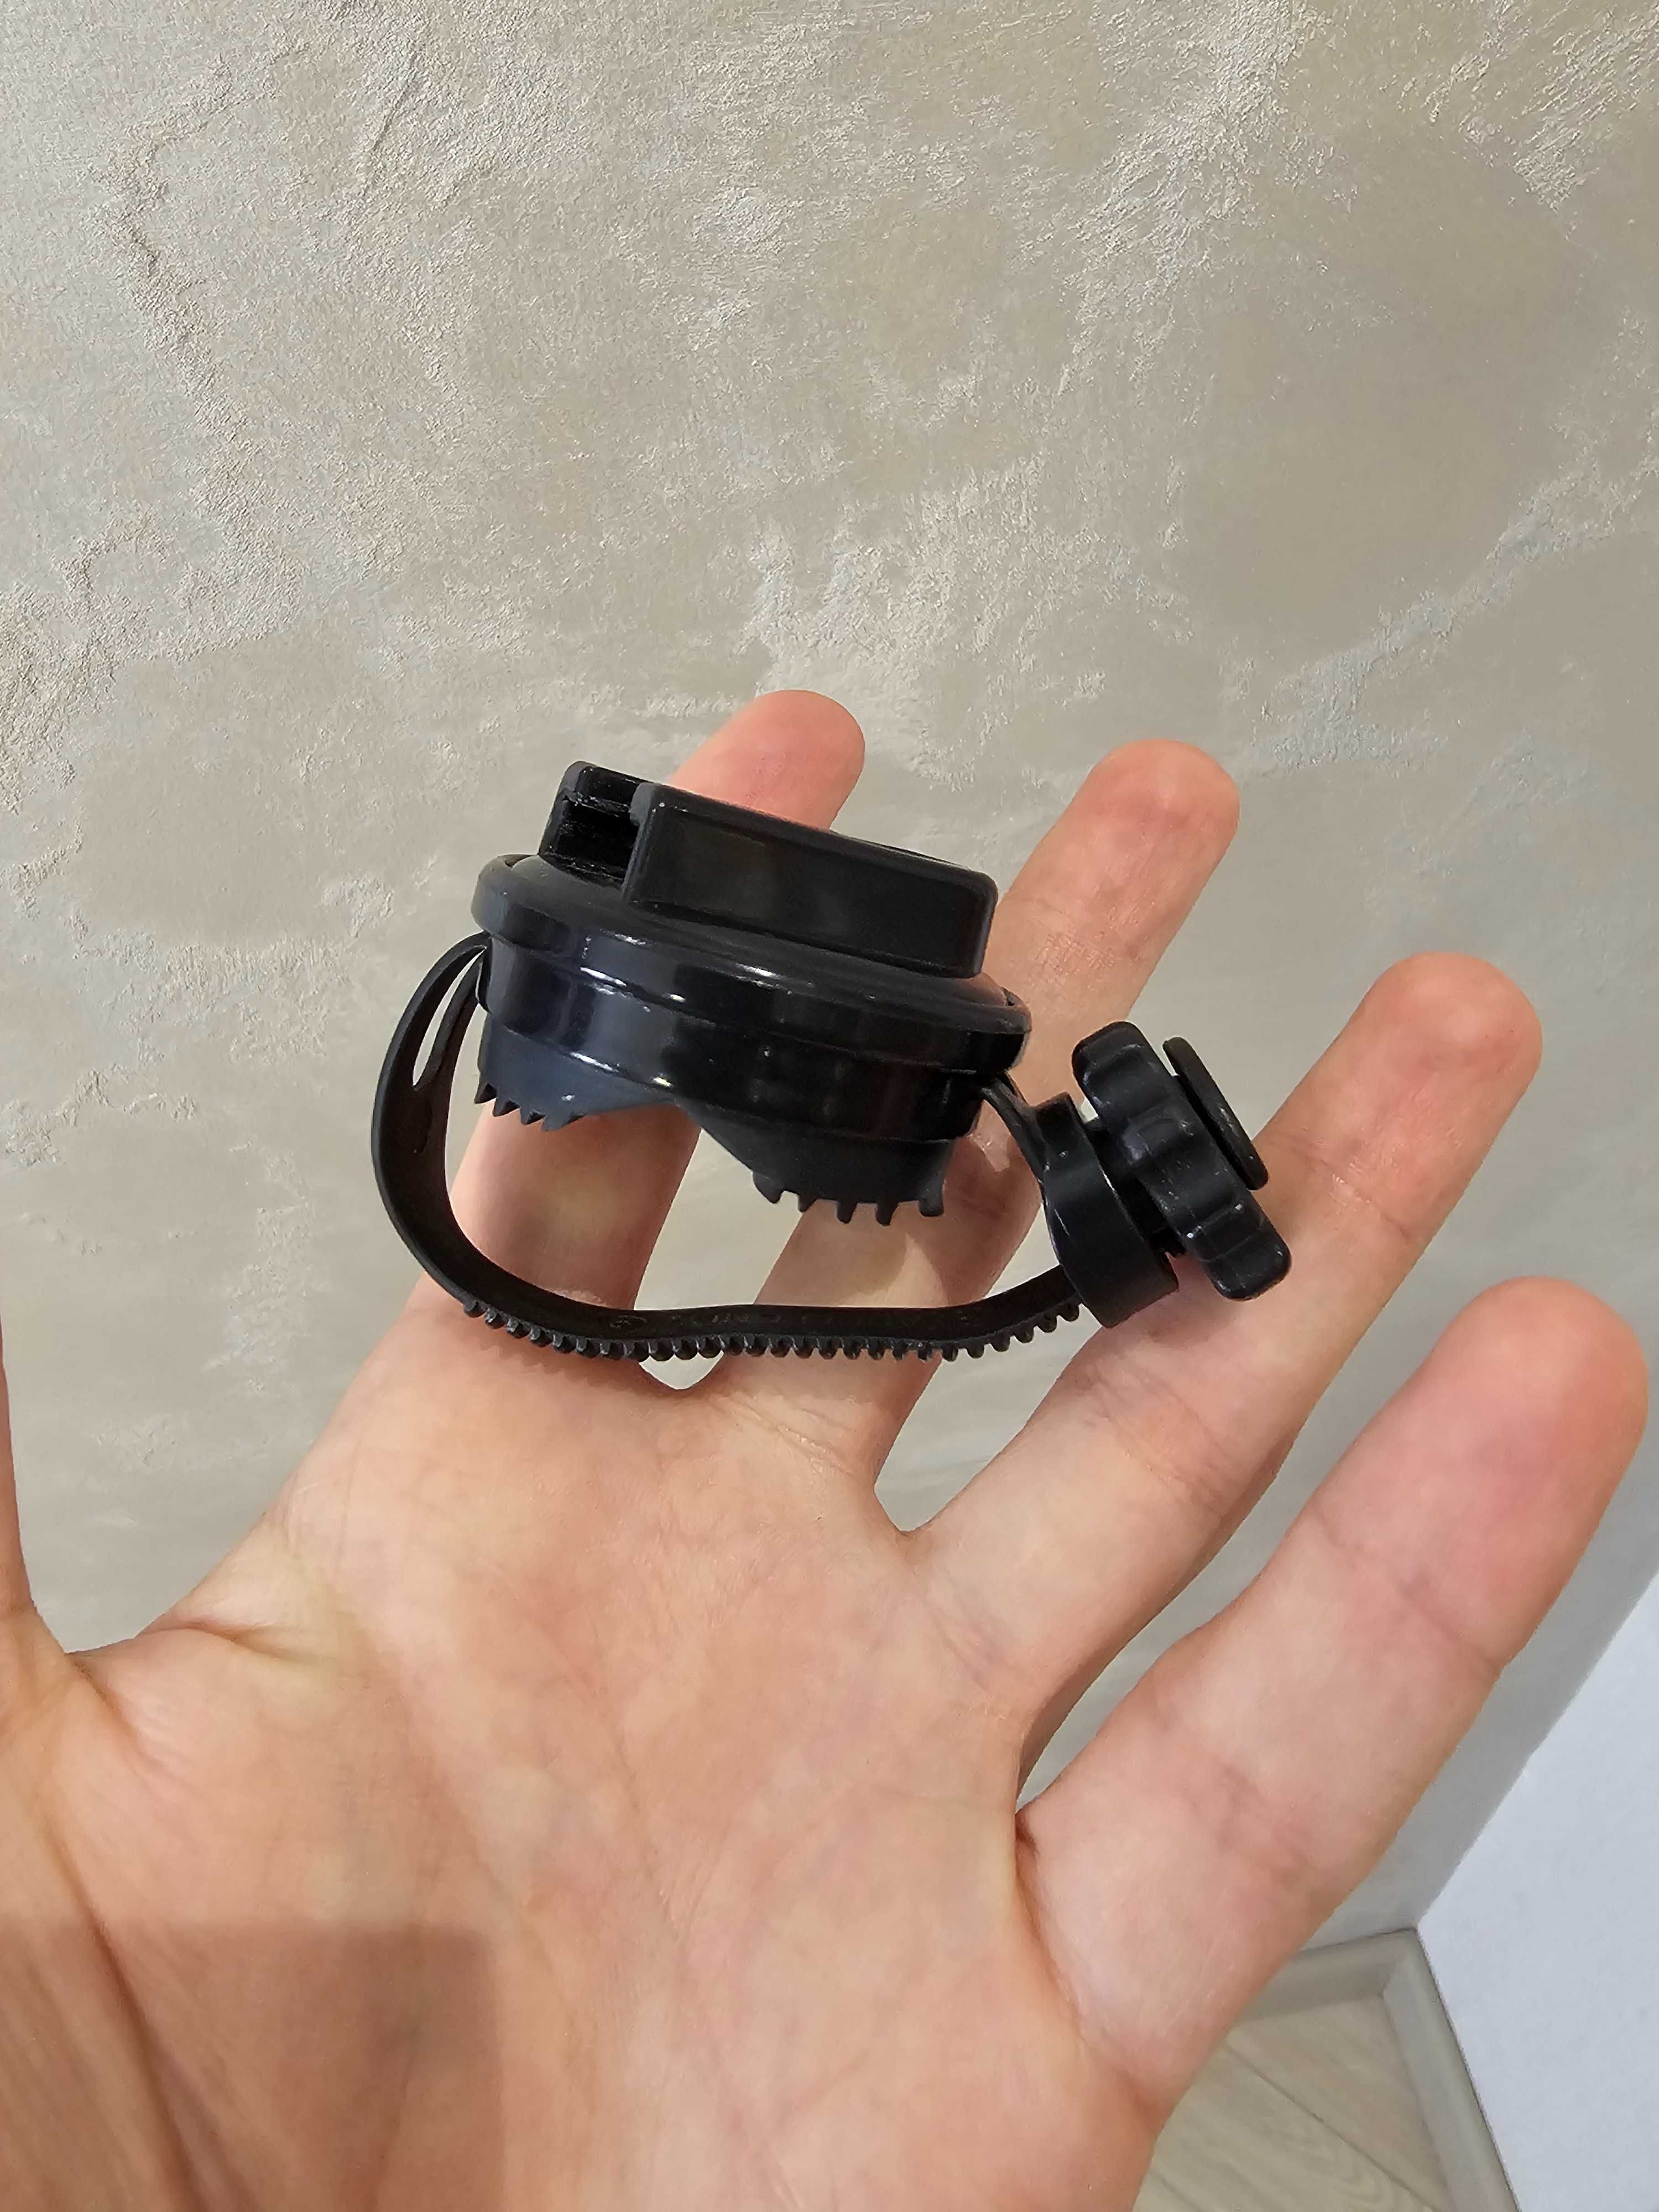 Rockit укачивающее устройство для коляски (с зарядкой по USB)